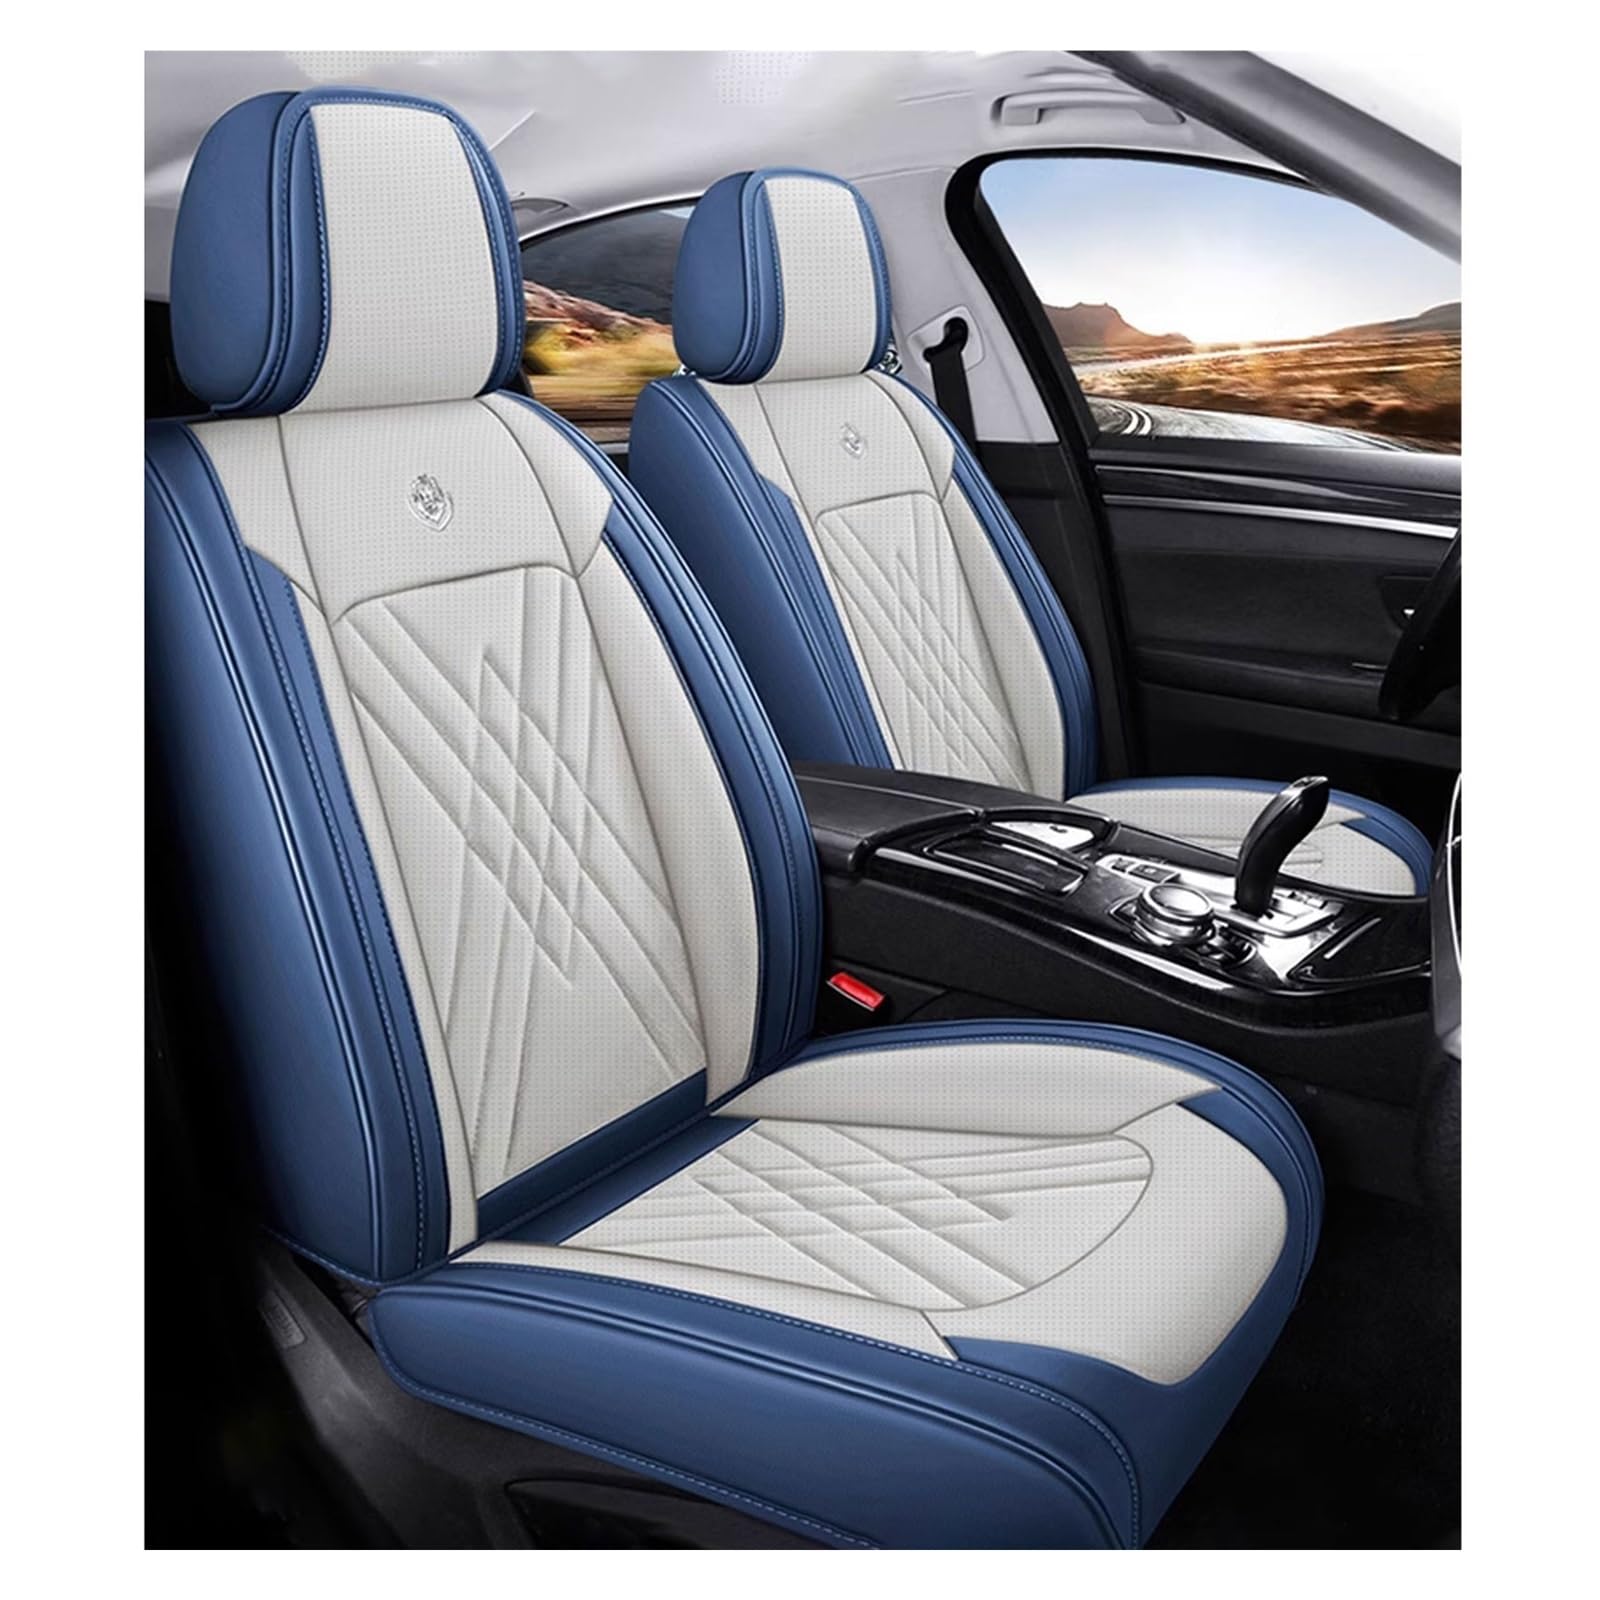 ZARUXCHA Universal-Sitzbezug Komplett-Set Für Honda Civic IX Coupe 2011 2012 2013 2014 AutositzbezüGe Set Leder, 5-Sitze Universal-SitzbezüGe Auto Komplettset(A(Blue-Beige)) von ZARUXCHA